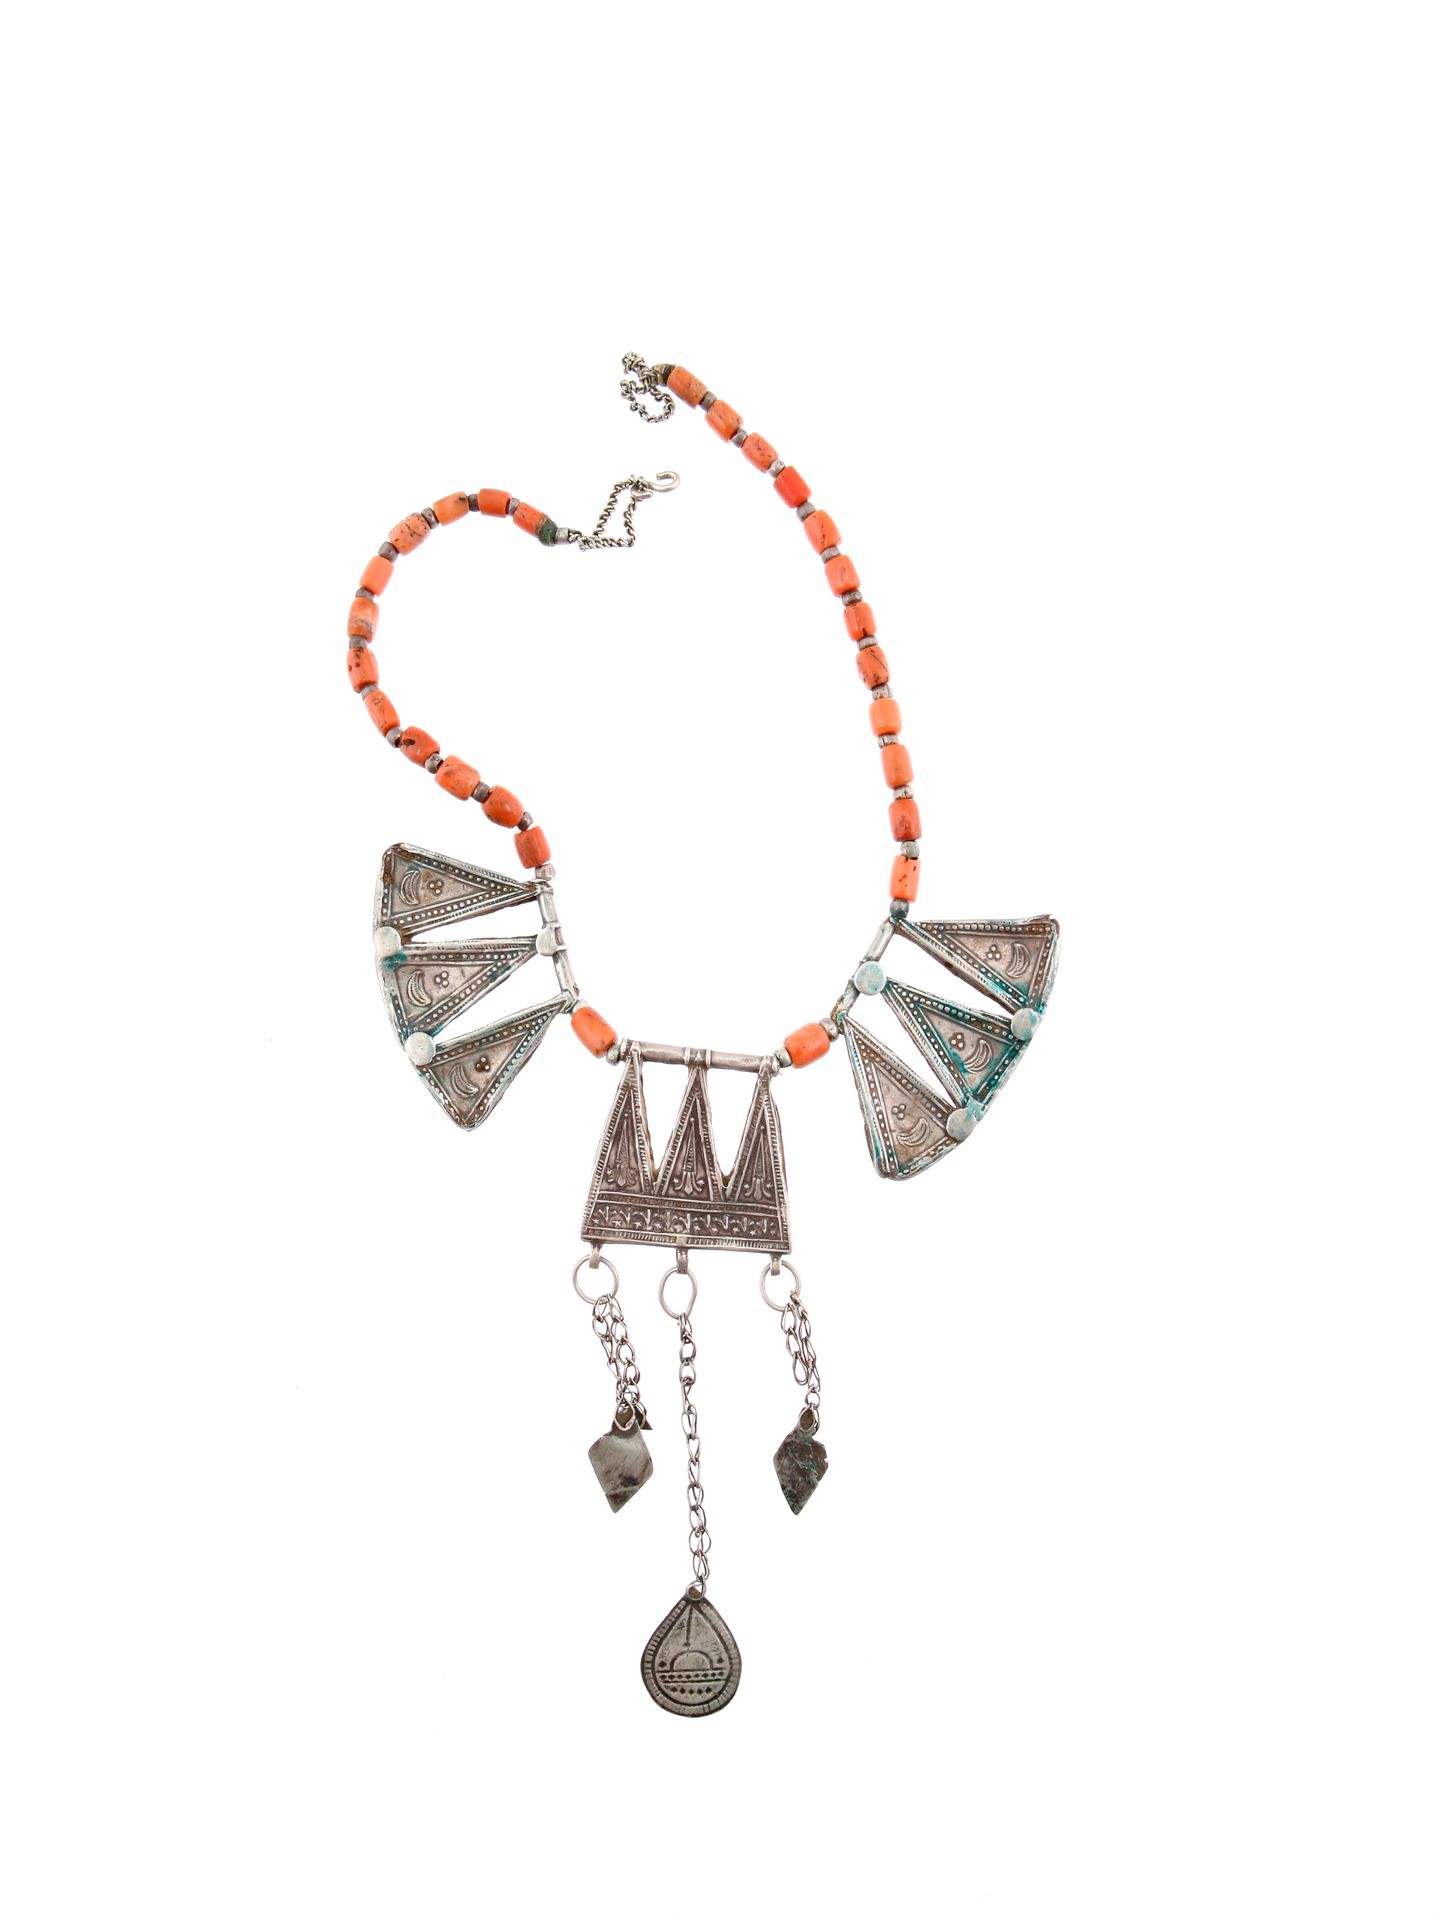 A Berber Necklace with three Pendants Collier avec trois pendentifs bijoux

Berb&hellip;